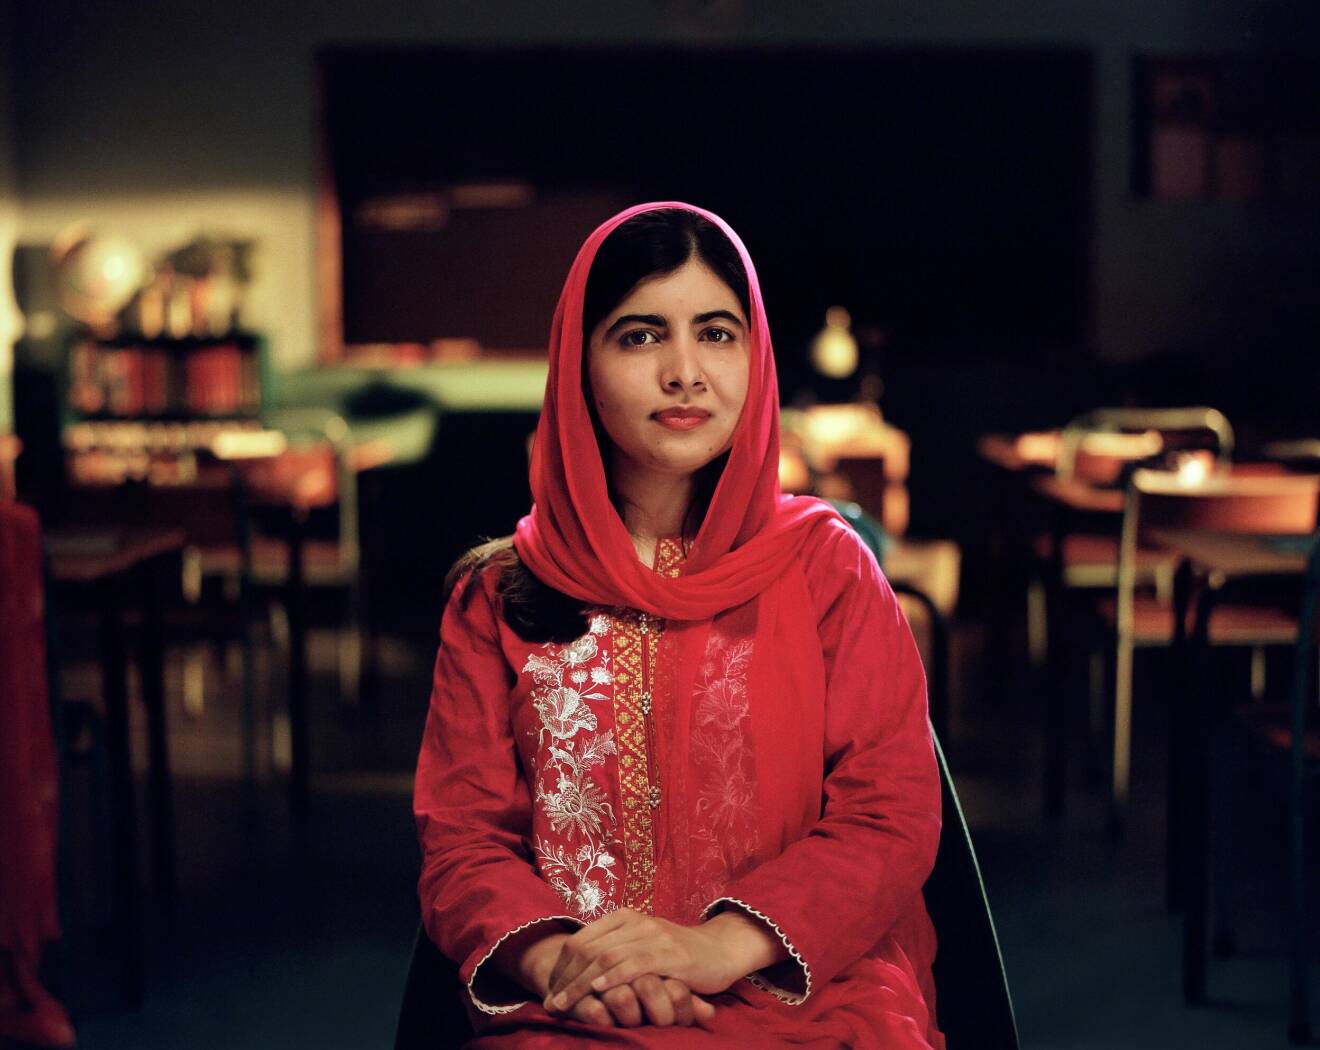 Malala Yousafzai tig emot nobelpriset 2014.